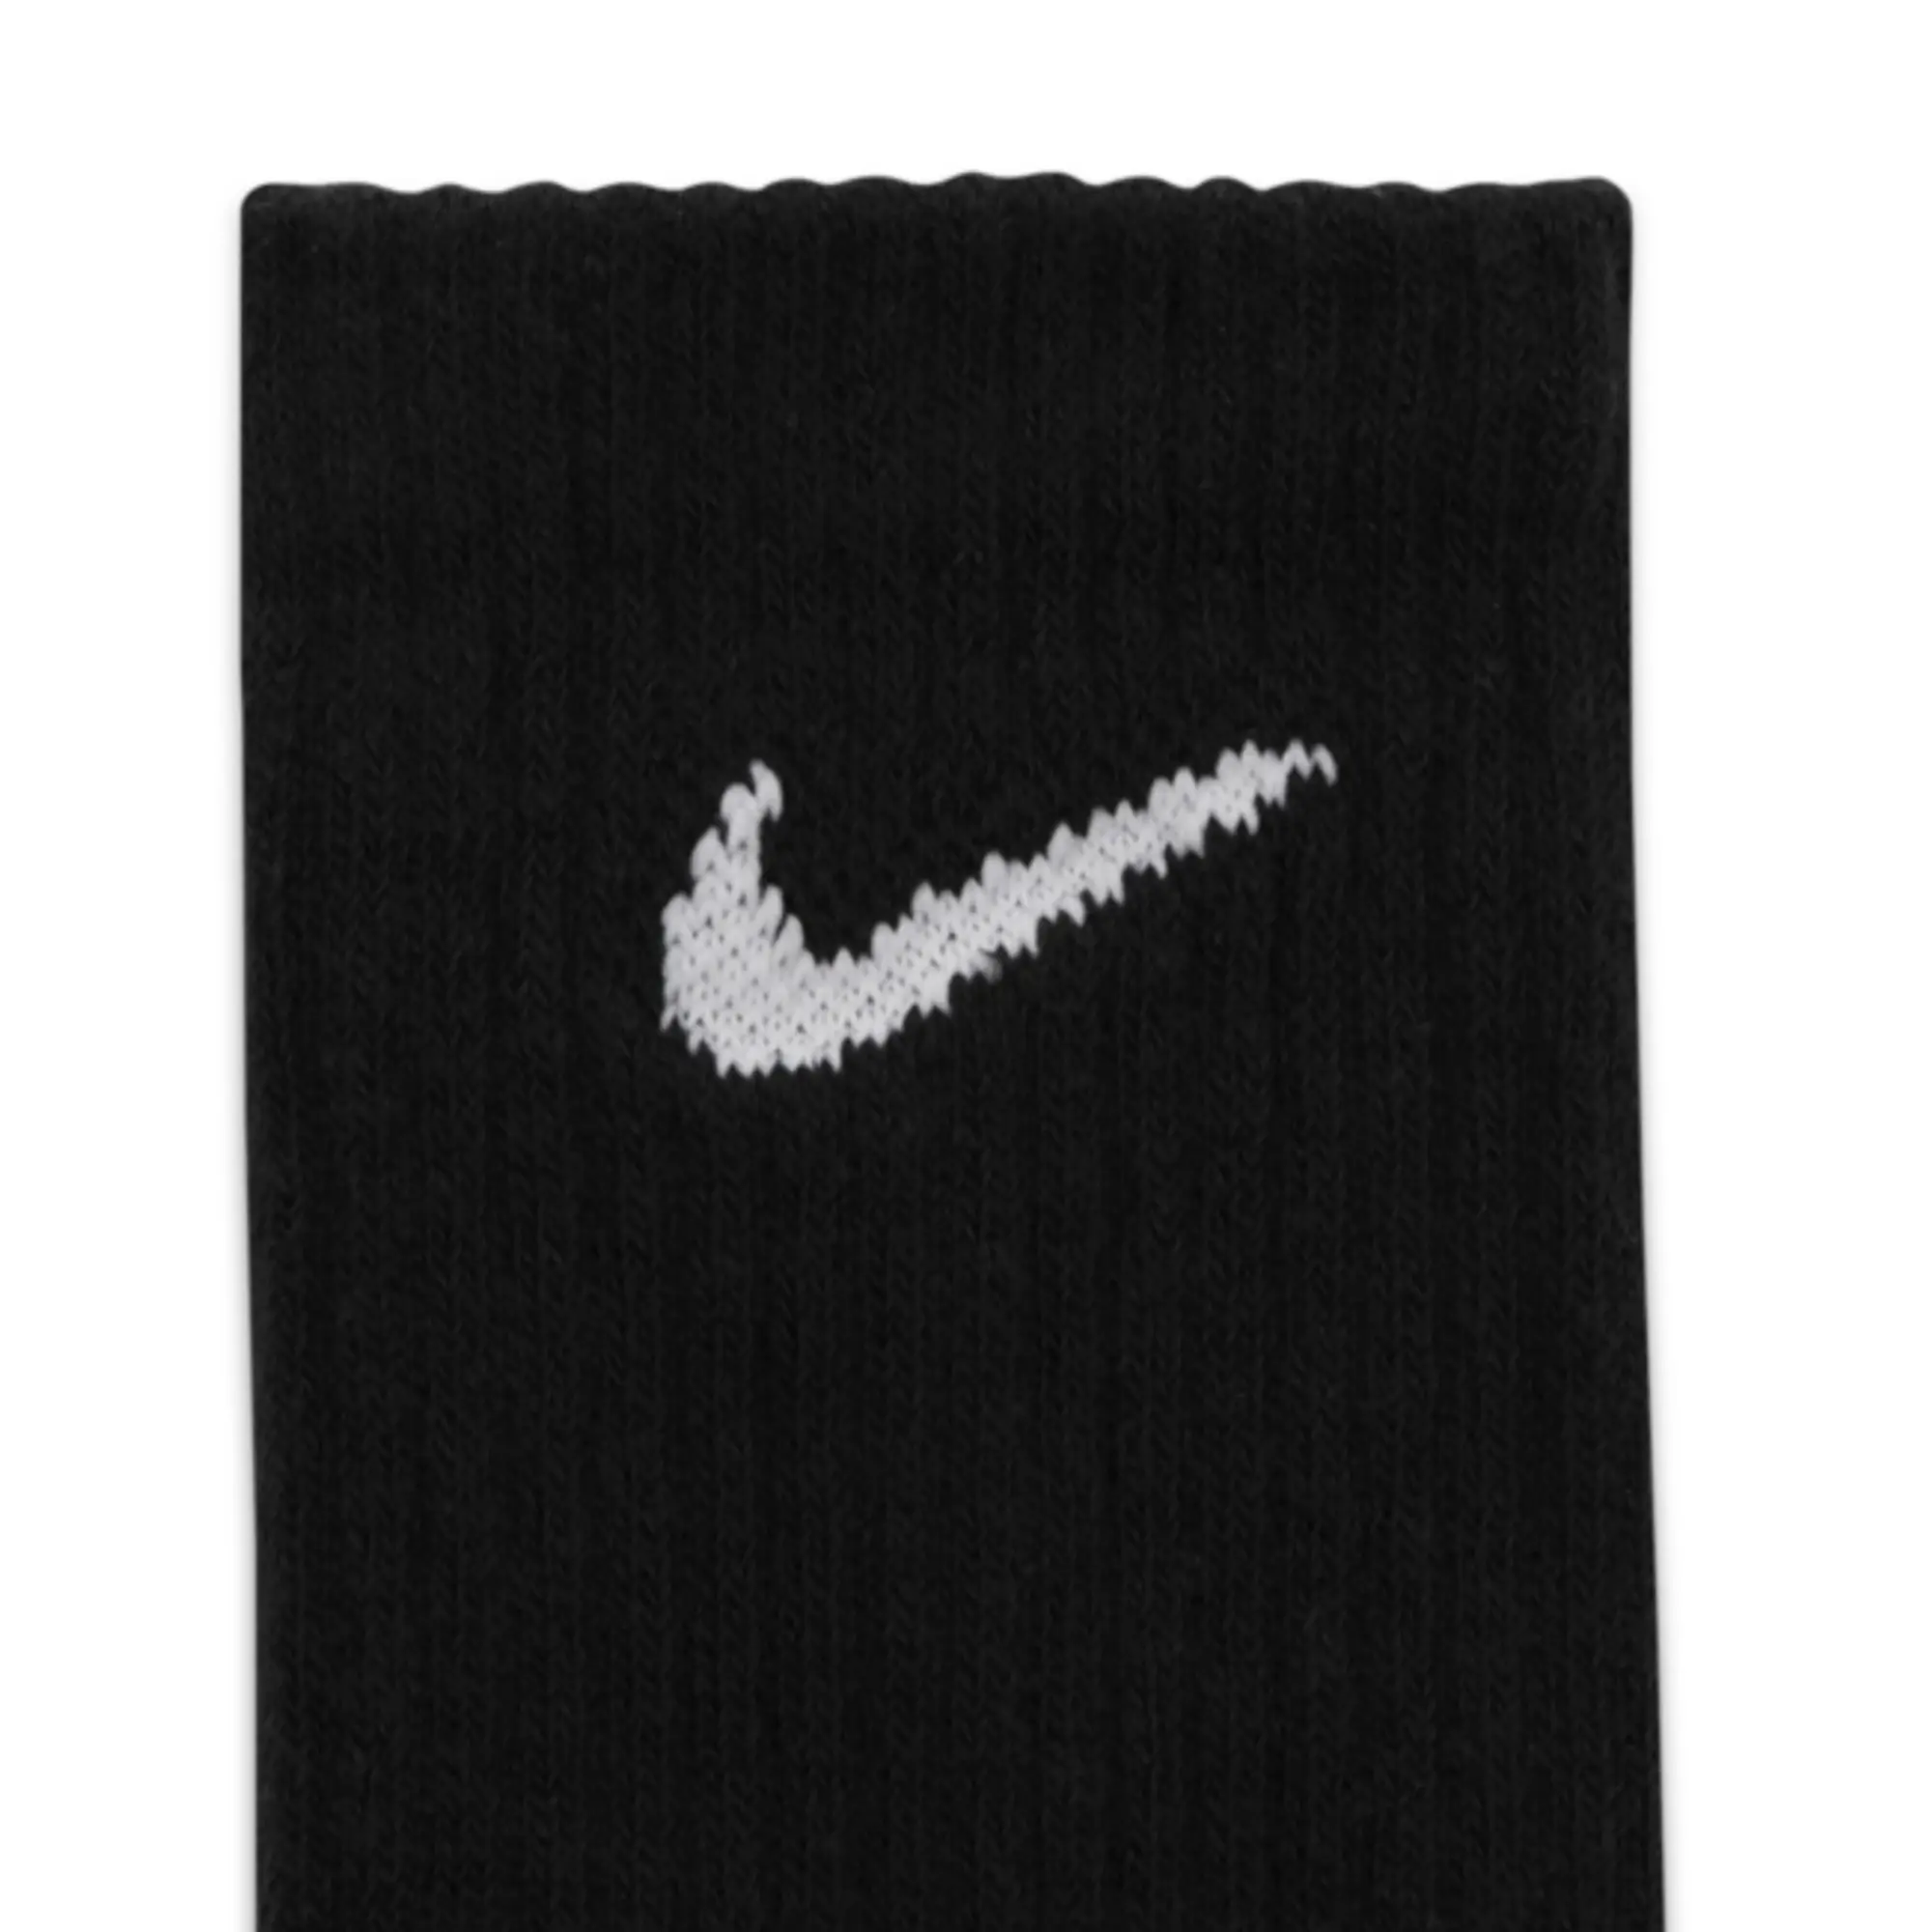 Nike Training Lightweight Socks 3 Pack In Black